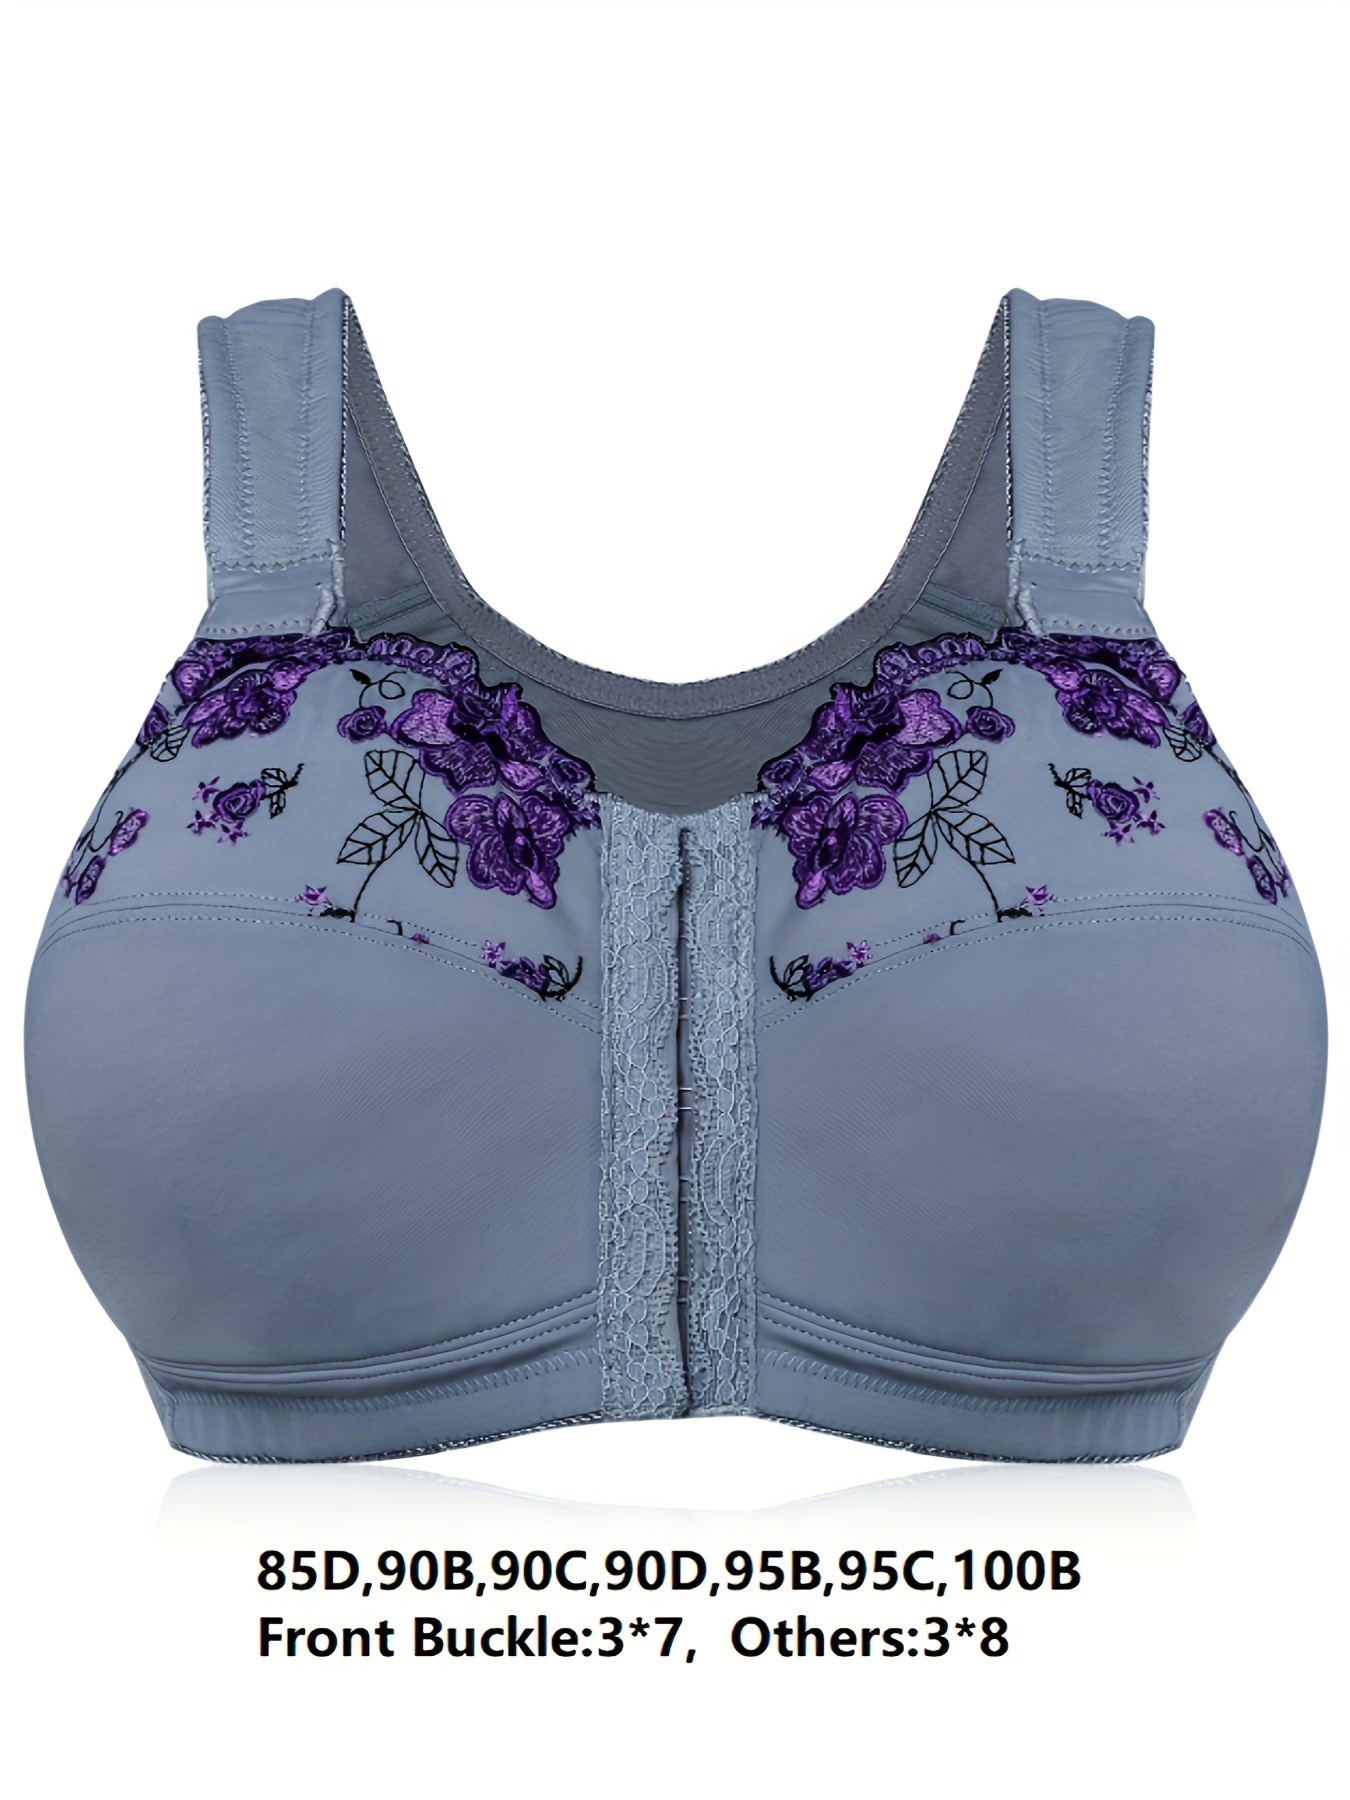 Générique Bra Vest Tops for Women Plus Size Comfy Bra Plus Size